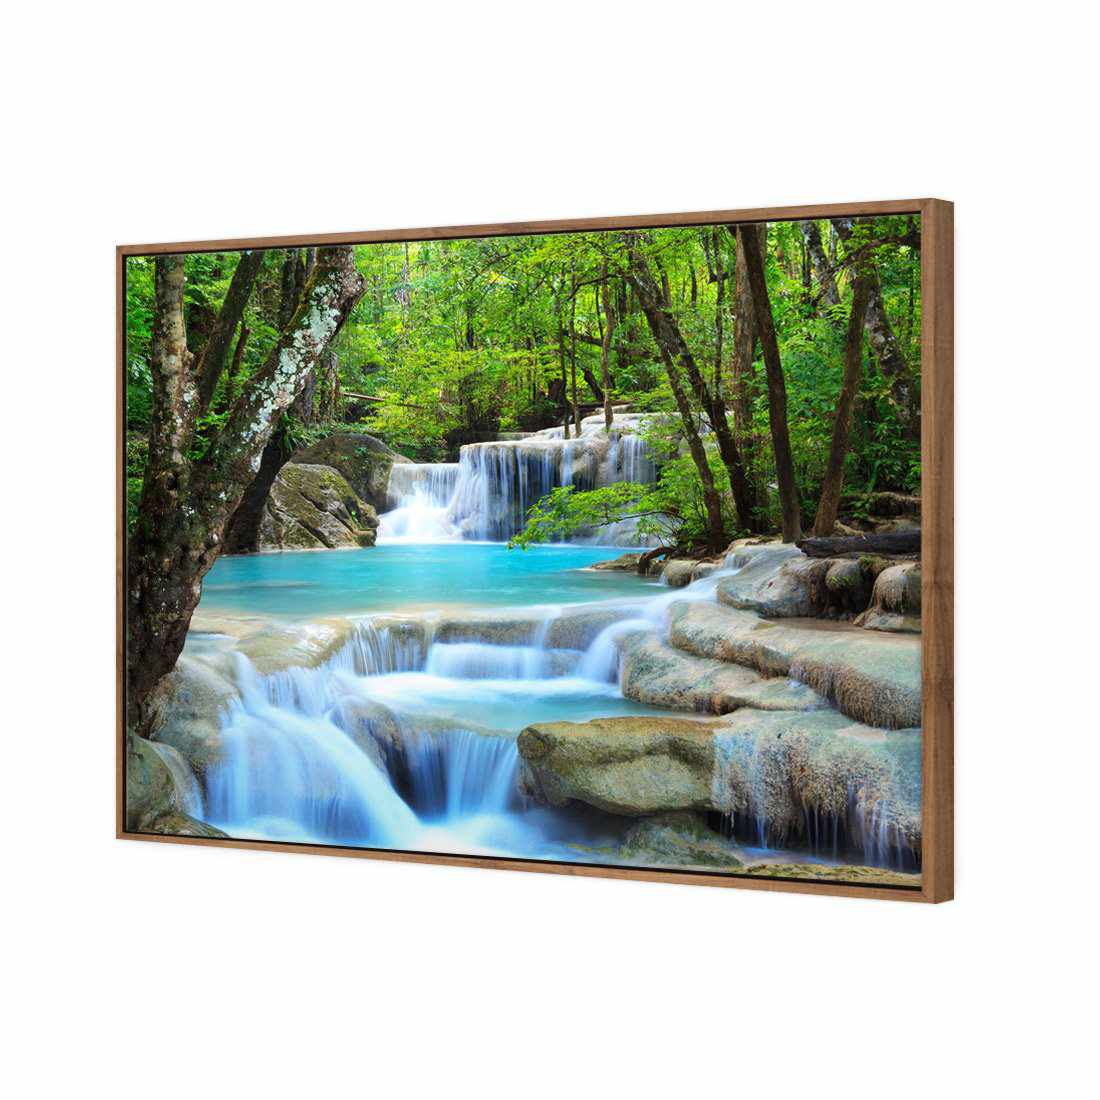 Soft Waterfalls Canvas Art-Canvas-Wall Art Designs-45x30cm-Canvas - Natural Frame-Wall Art Designs